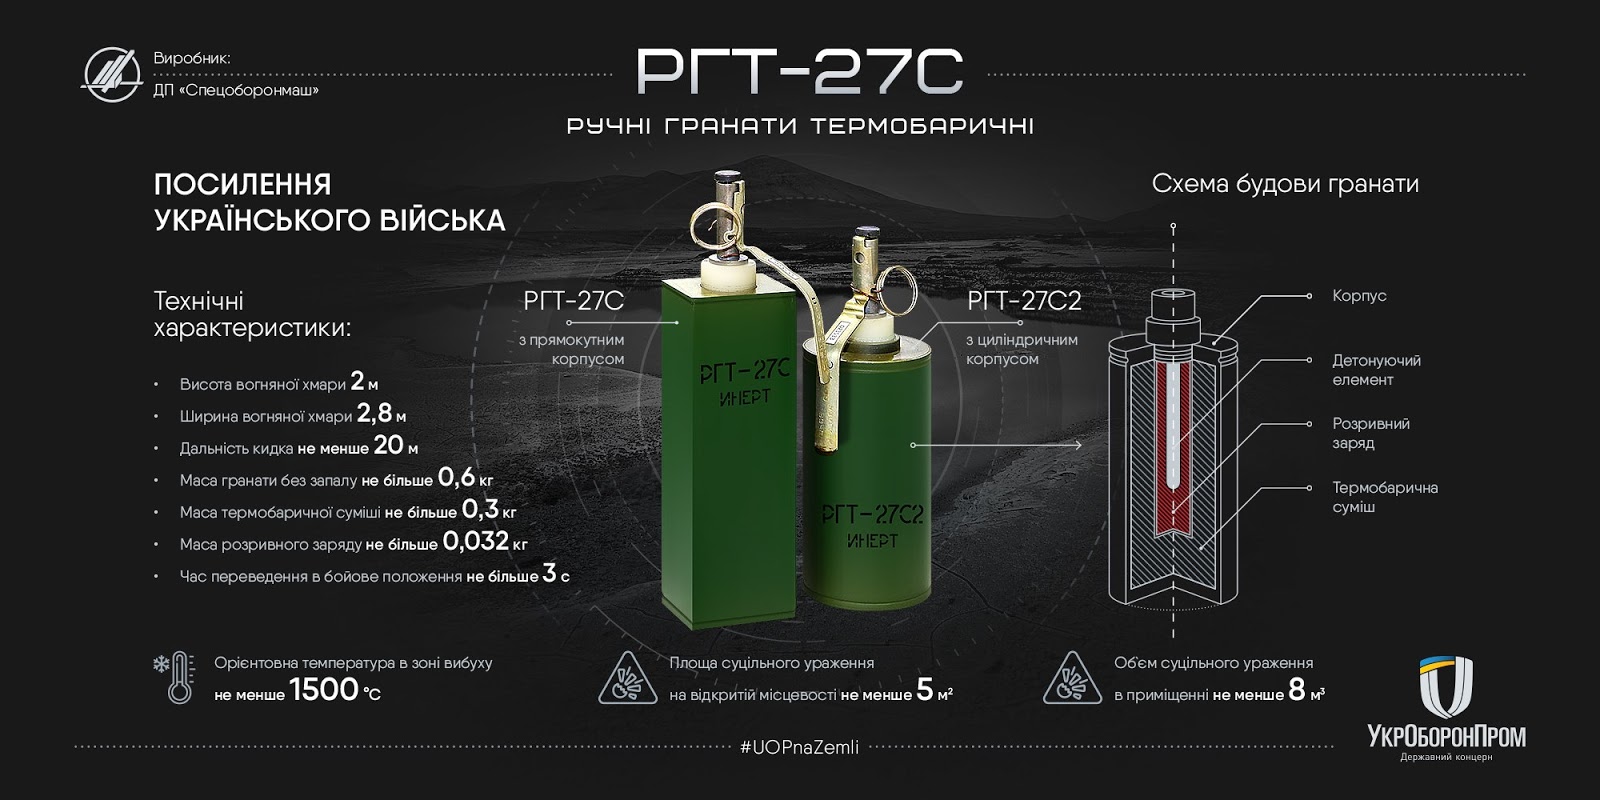 Термобаричні гранати РГТ-27 прийнято на озброєння ЗСУ